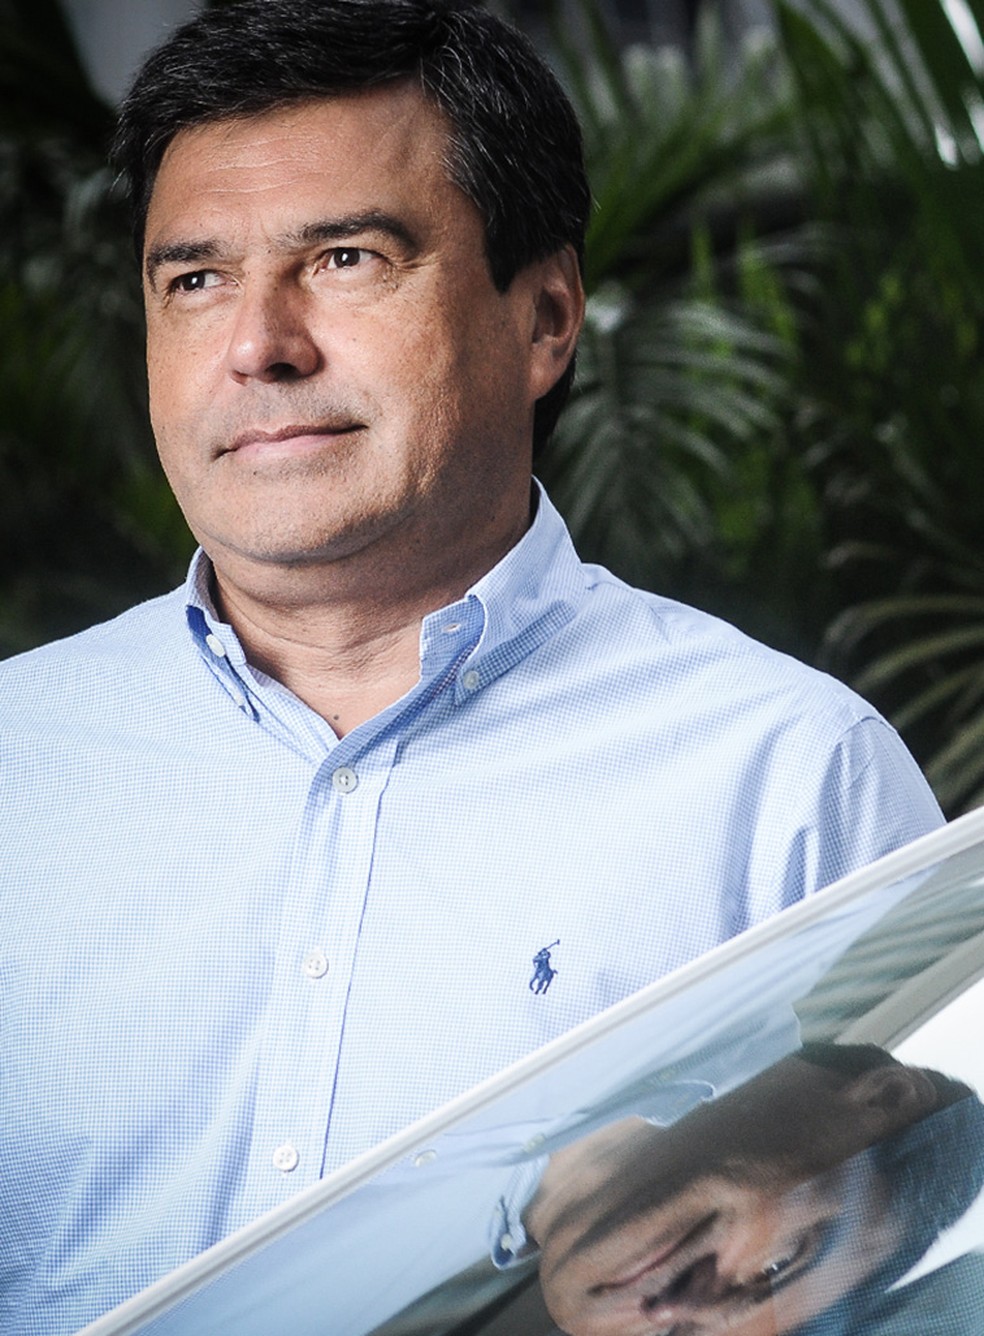 Barbosa, presidente, diz que plano prevê testes em 15 clientes em todo país — Foto: Claudio Belli/Valor